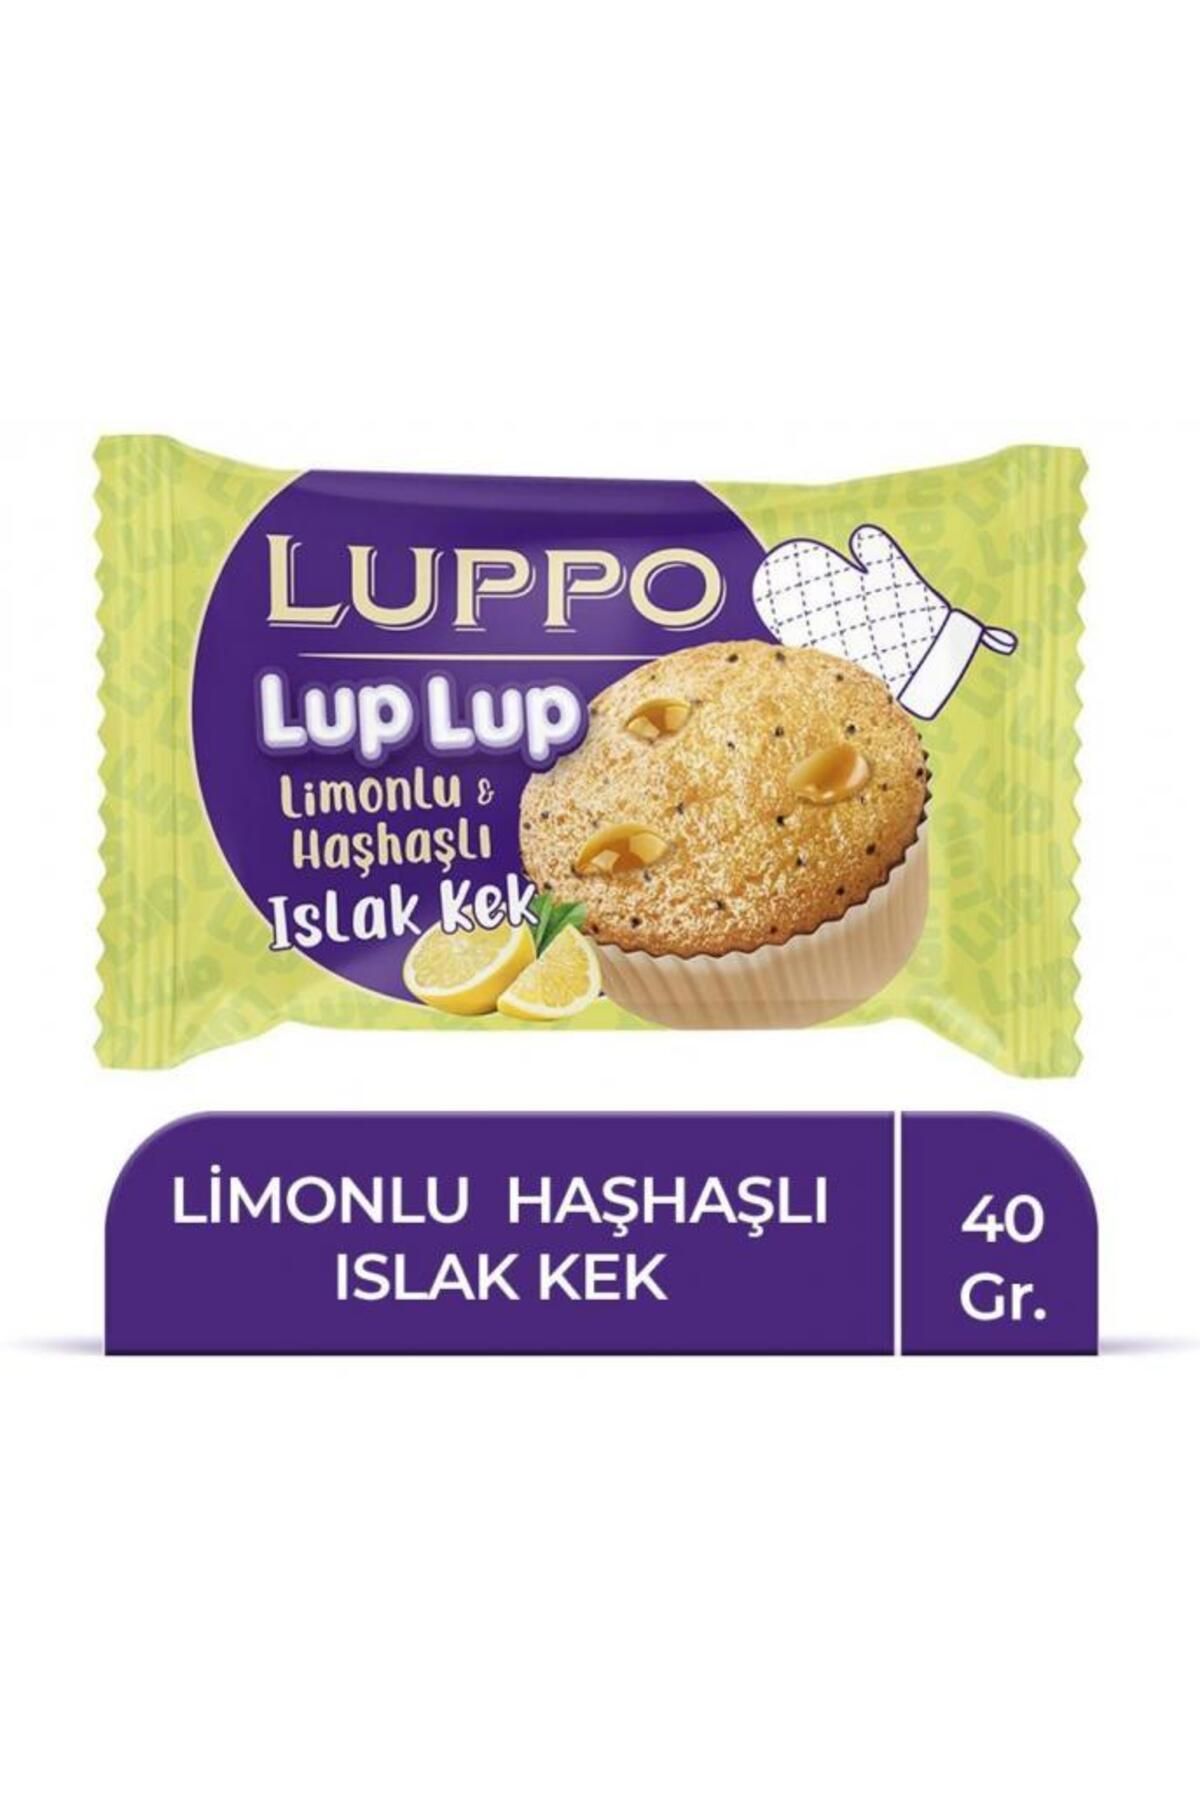 Şölen Luppo Limonlu Haşhaşlı Islak Kek 40 Gr. (6'LI)